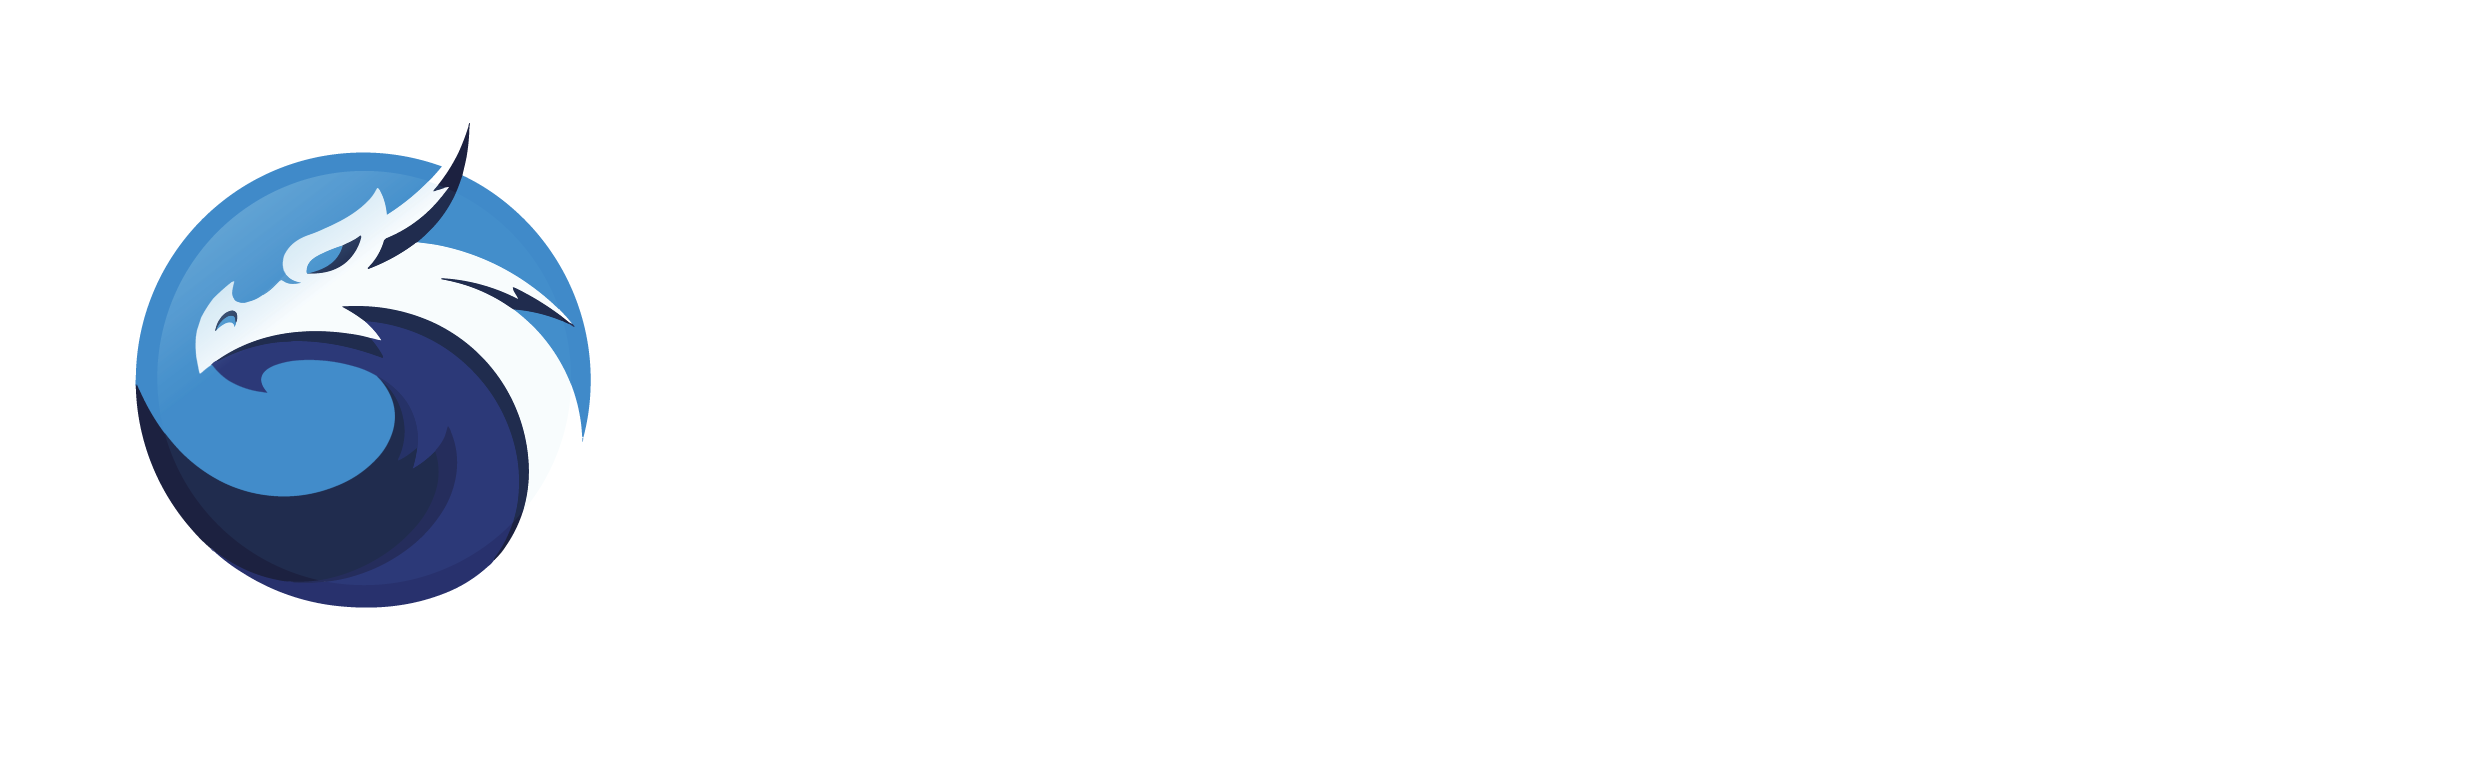 quickswap